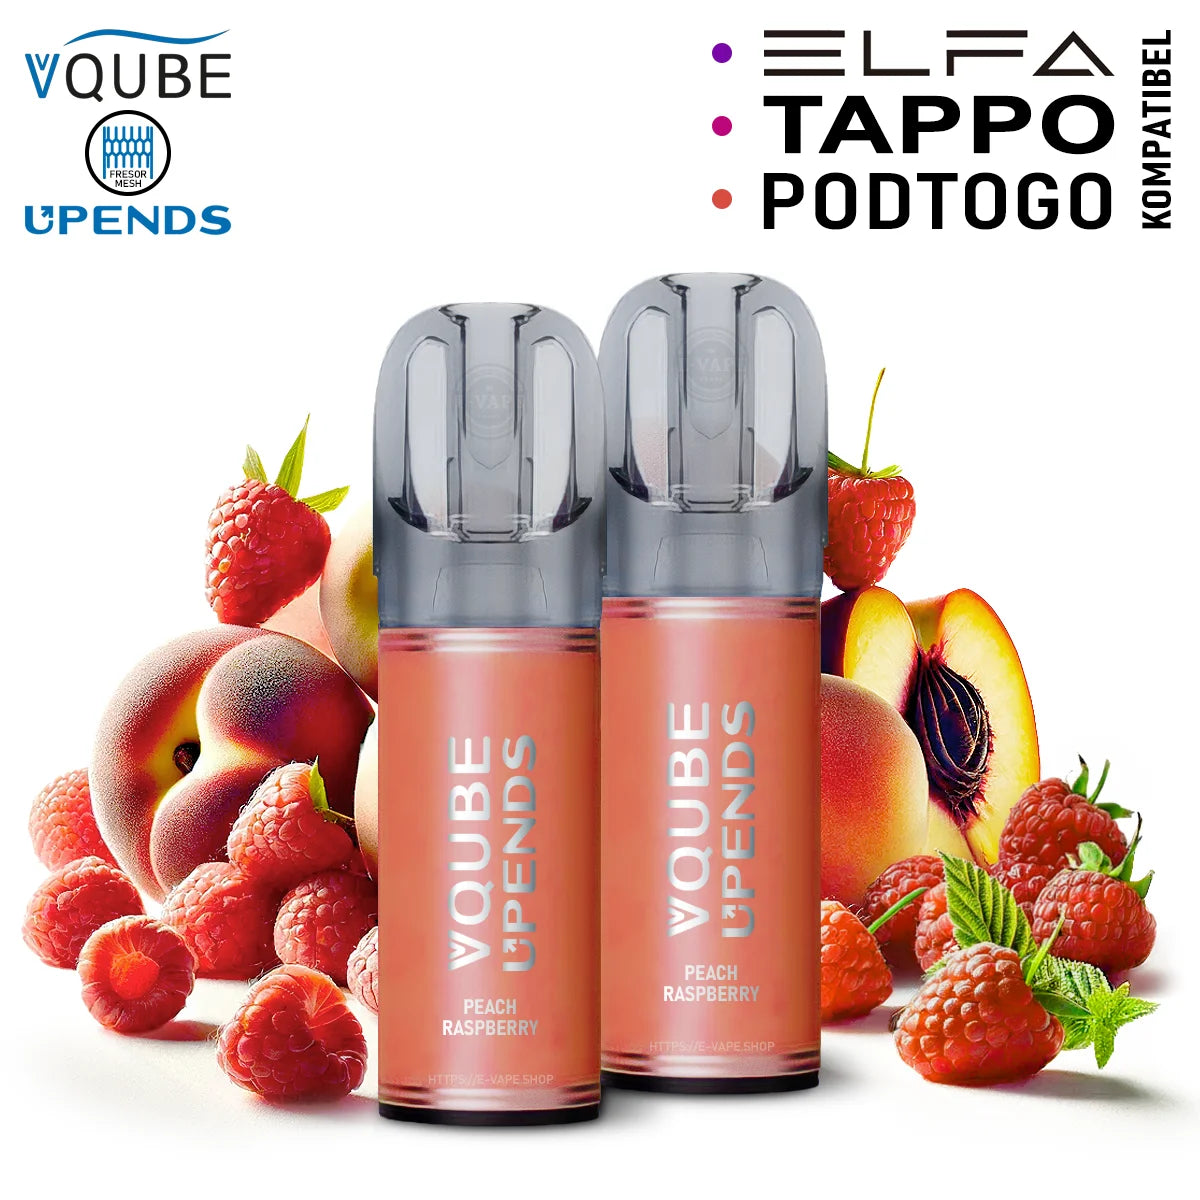 Vqube Upends Pod Peach Raspberry 20mg ELFA / Tappo / Pod2Go